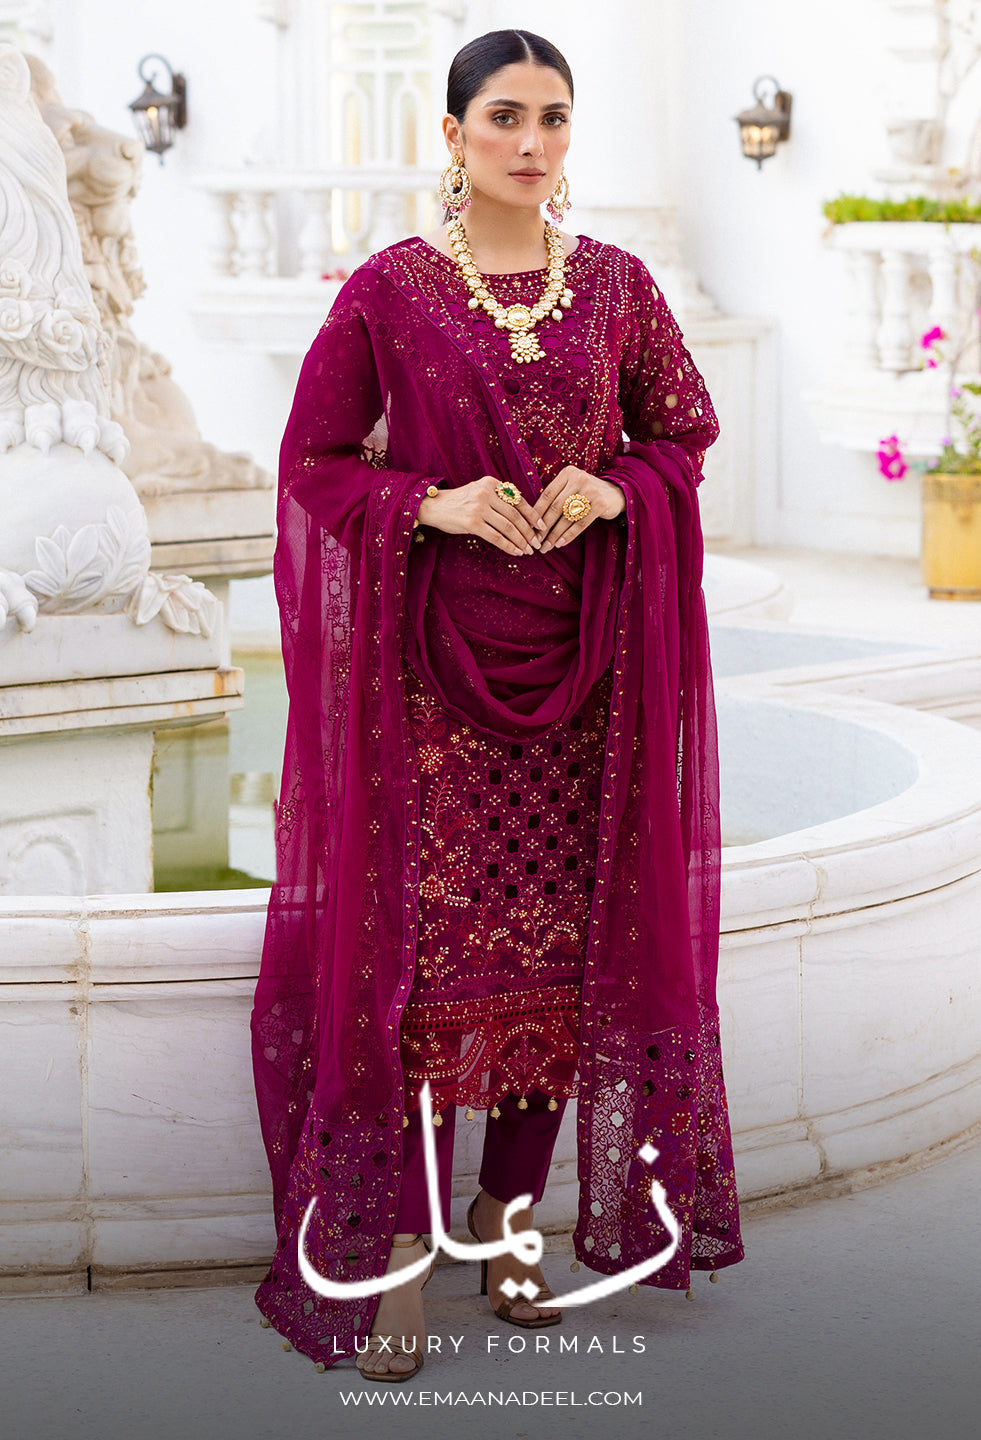 Velvet Dress Designs in Pakistan in Best fabric embroidered velvet dresses